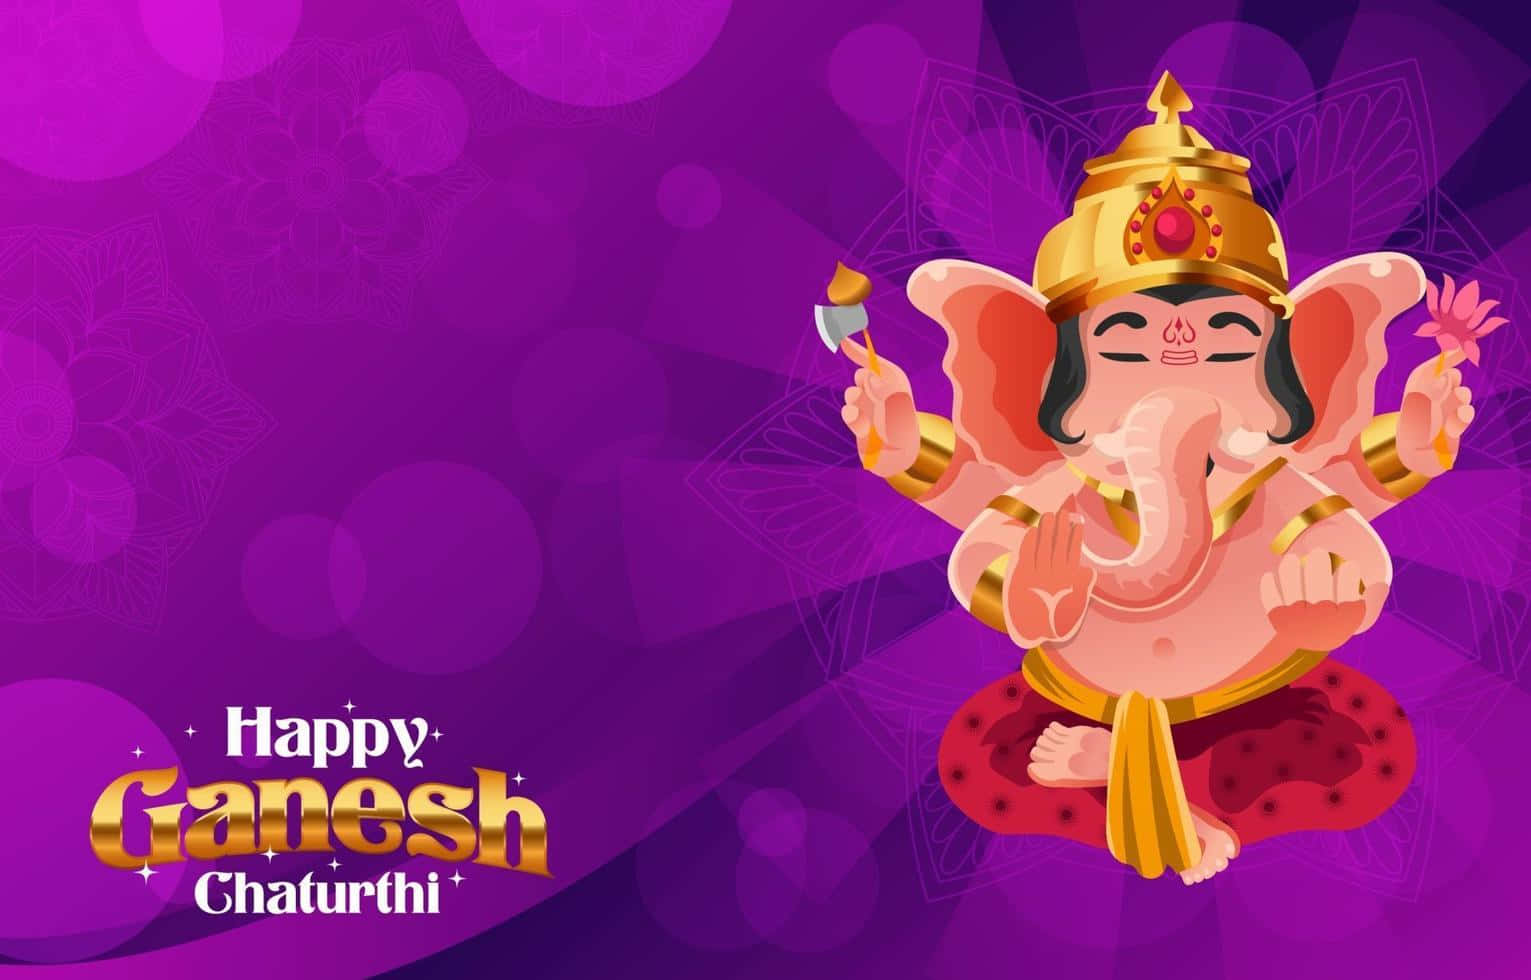 Fejrganesh Chaturthi Med Glæde Og Lykke!